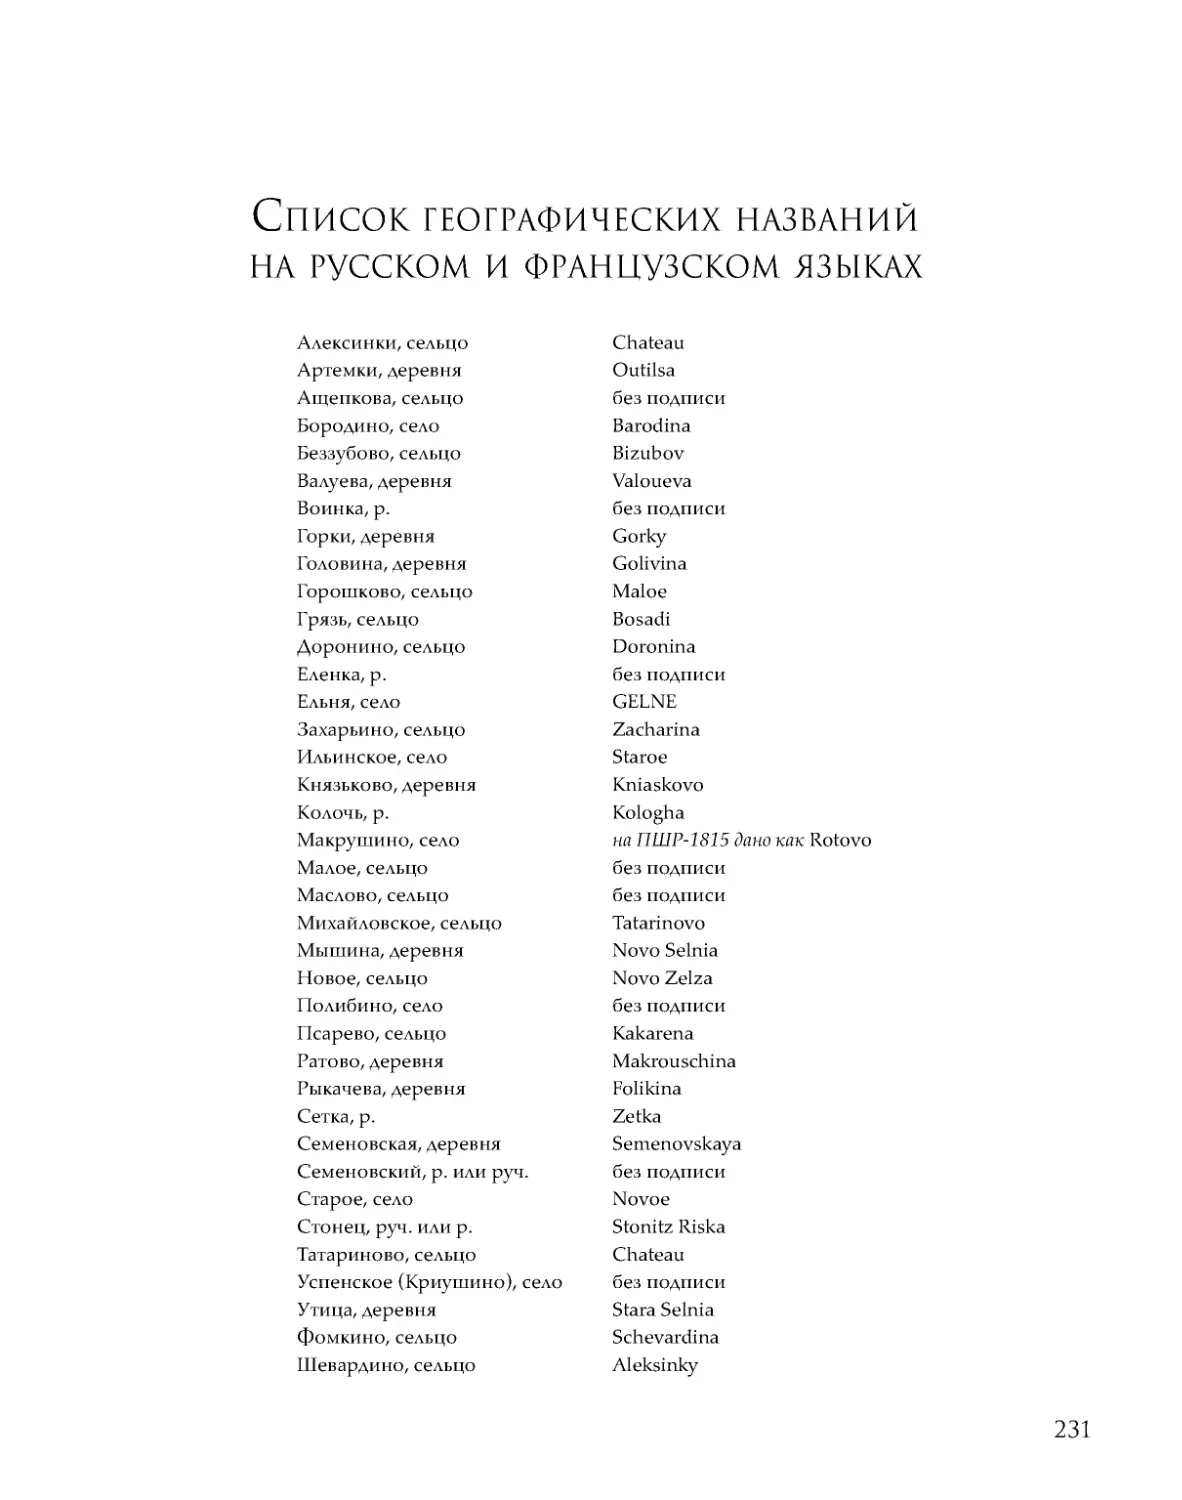 ﻿Список географических названий 
на русском и французском языка